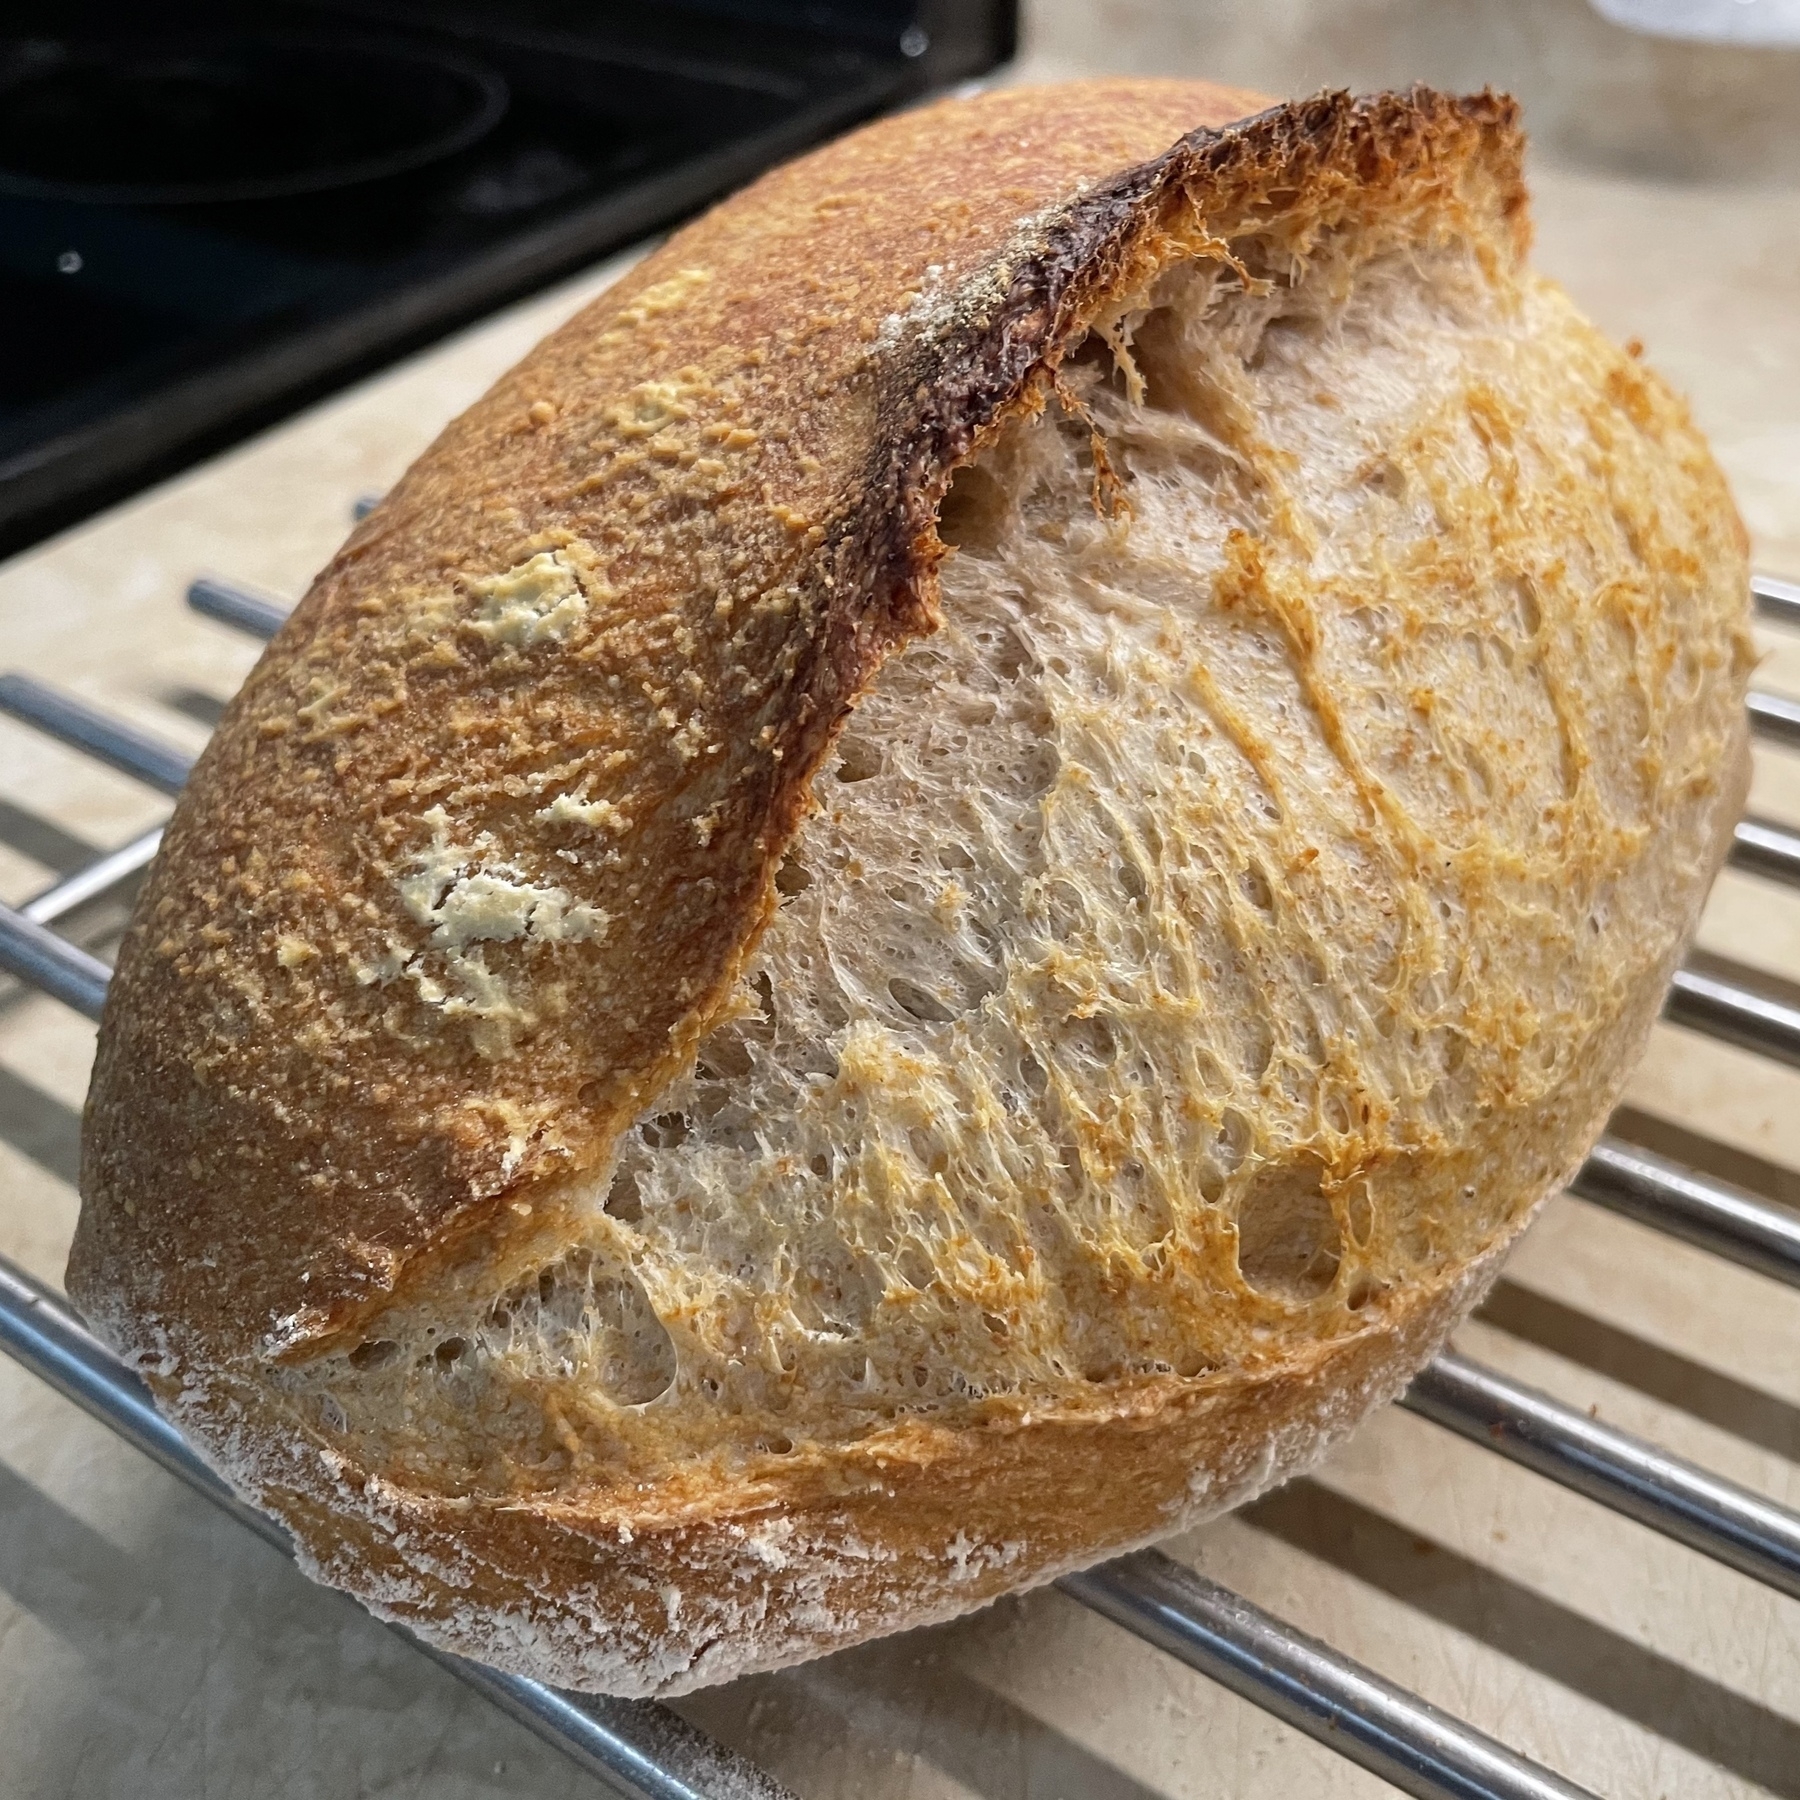 Sourdough loaf of bread cooling on metal rack.